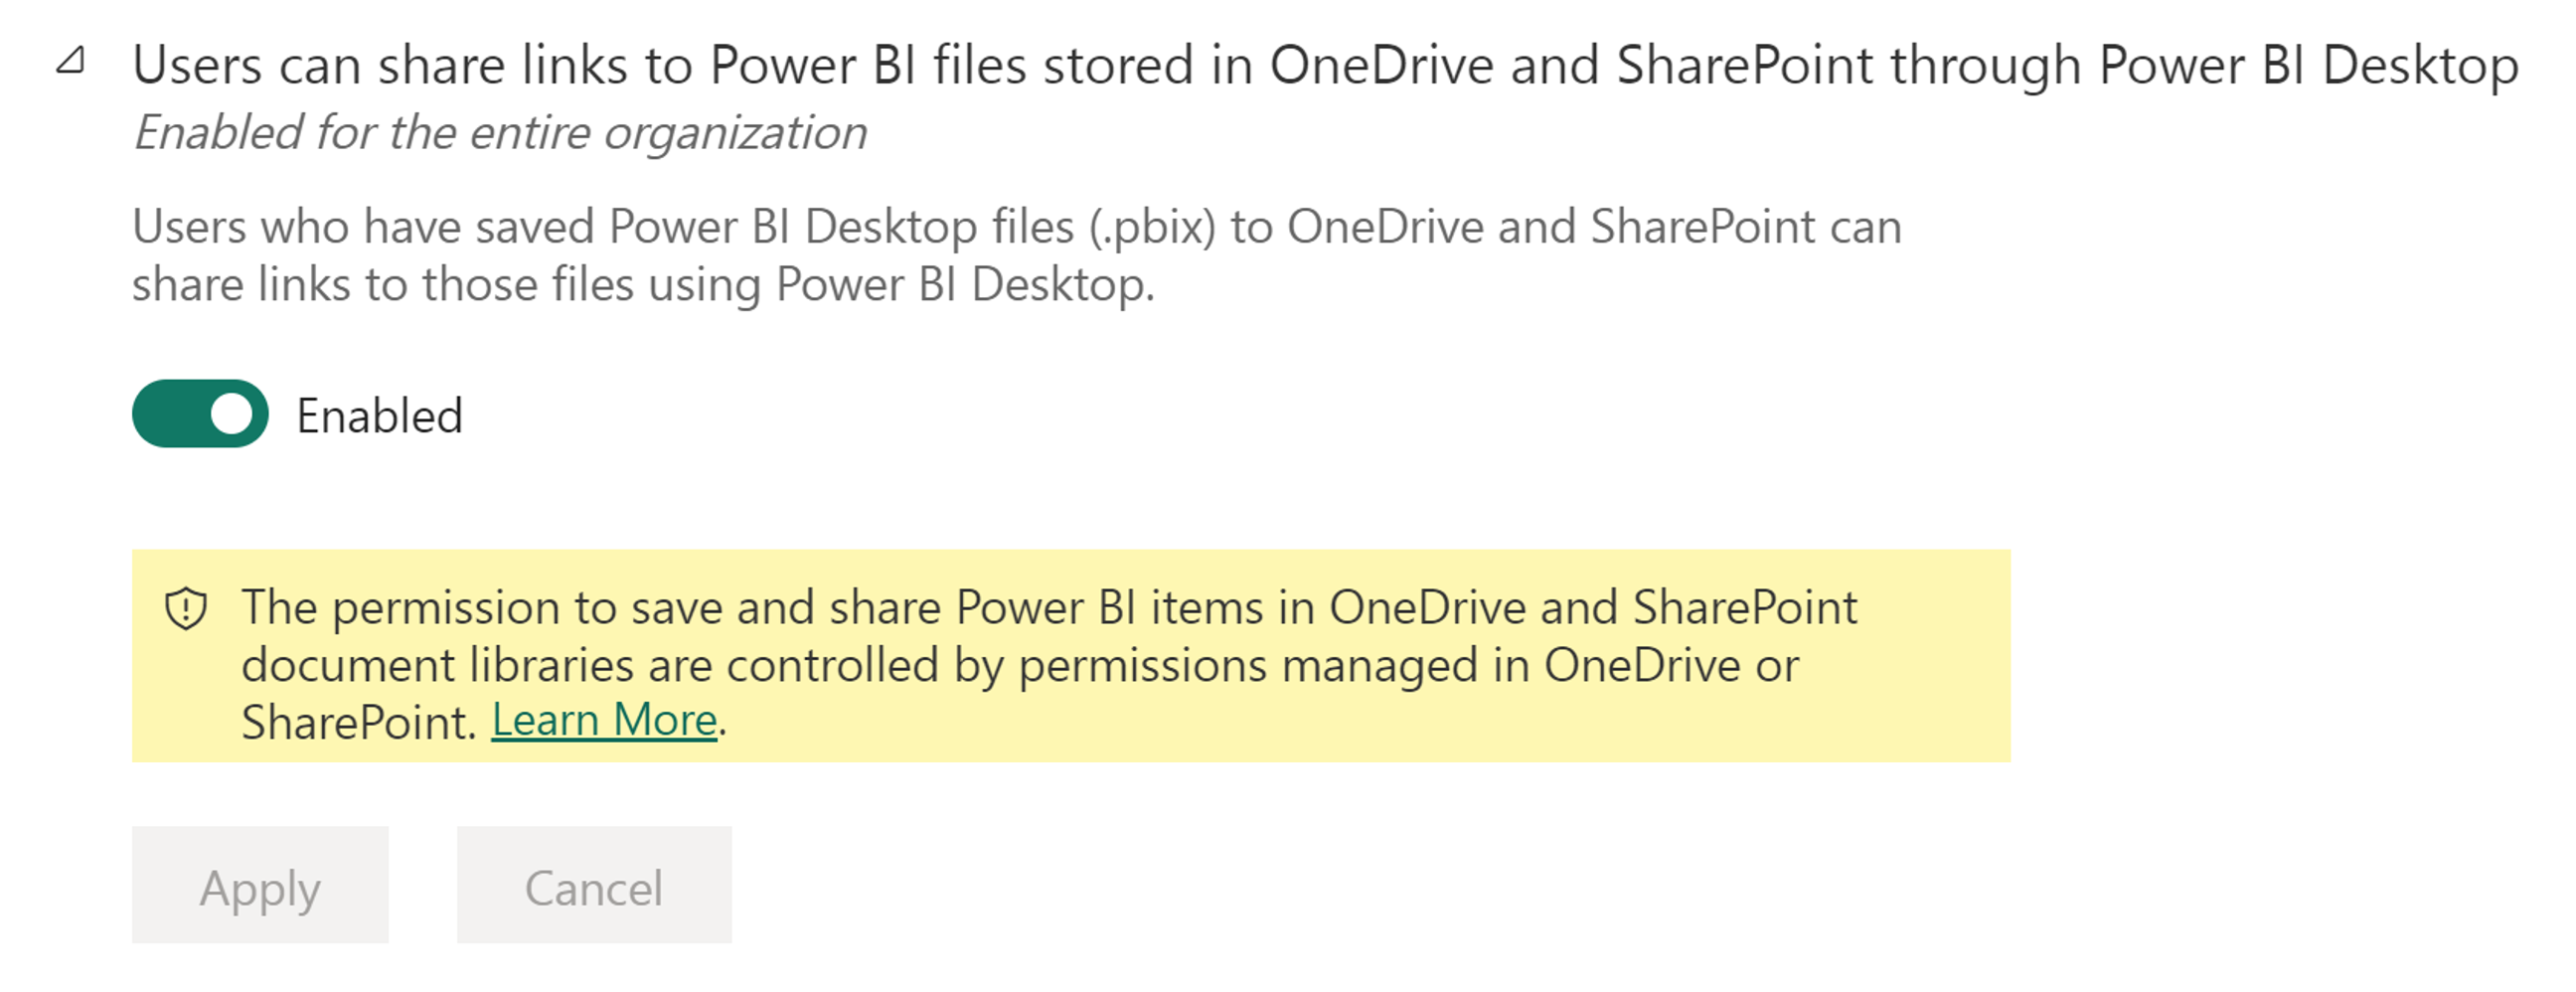 สกรีนช็อตของการตั้งค่าผู้ดูแลระบบที่เรียกว่า: ผู้ใช้สามารถแชร์ลิงก์ไปยังไฟล์ Power BI ที่จัดเก็บใน OneDrive และ SharePoint ผ่าน Power BI Desktop ได้